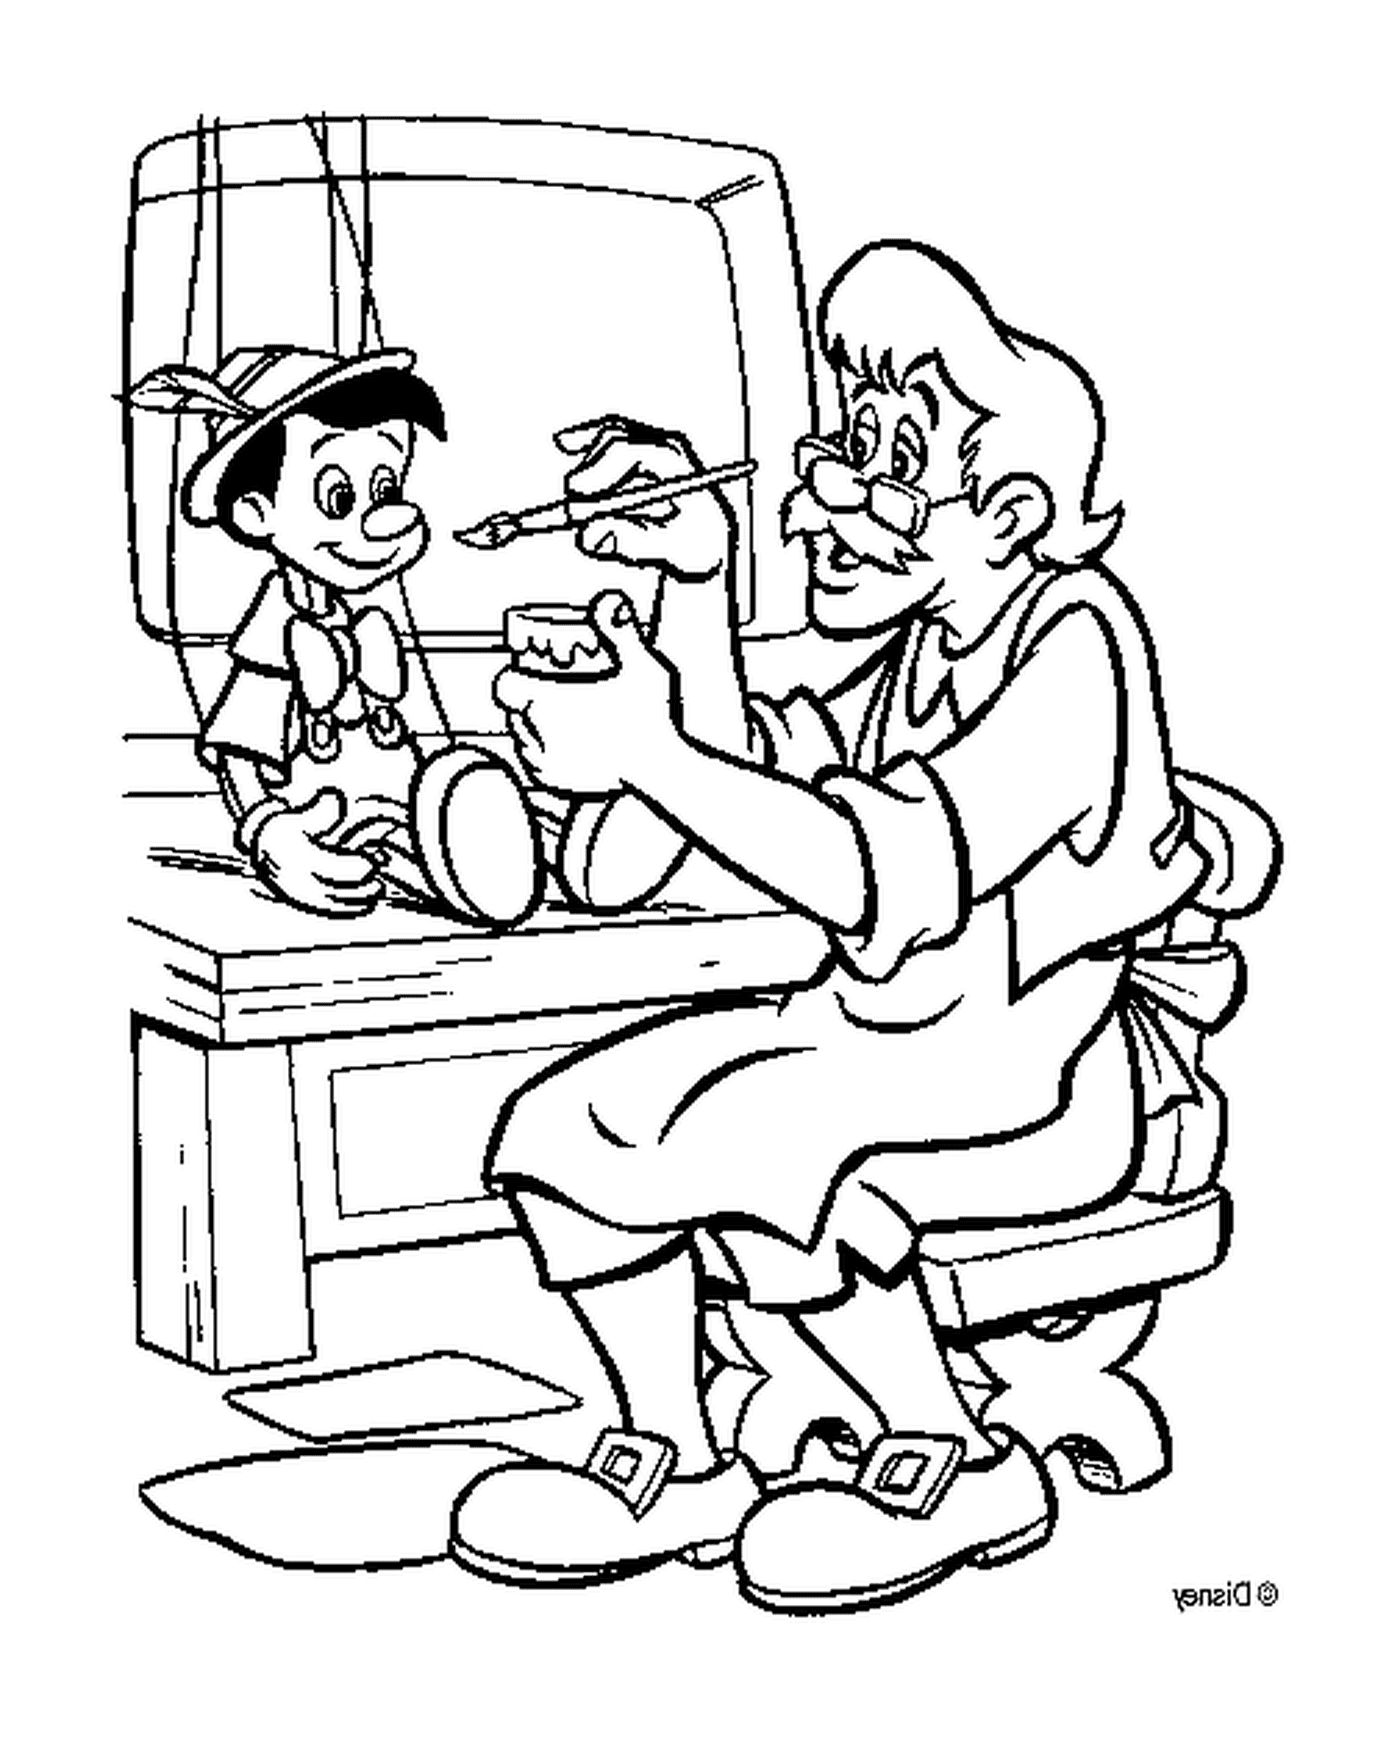  Geppetto fertigt Pinocchio in seiner Werkstatt 